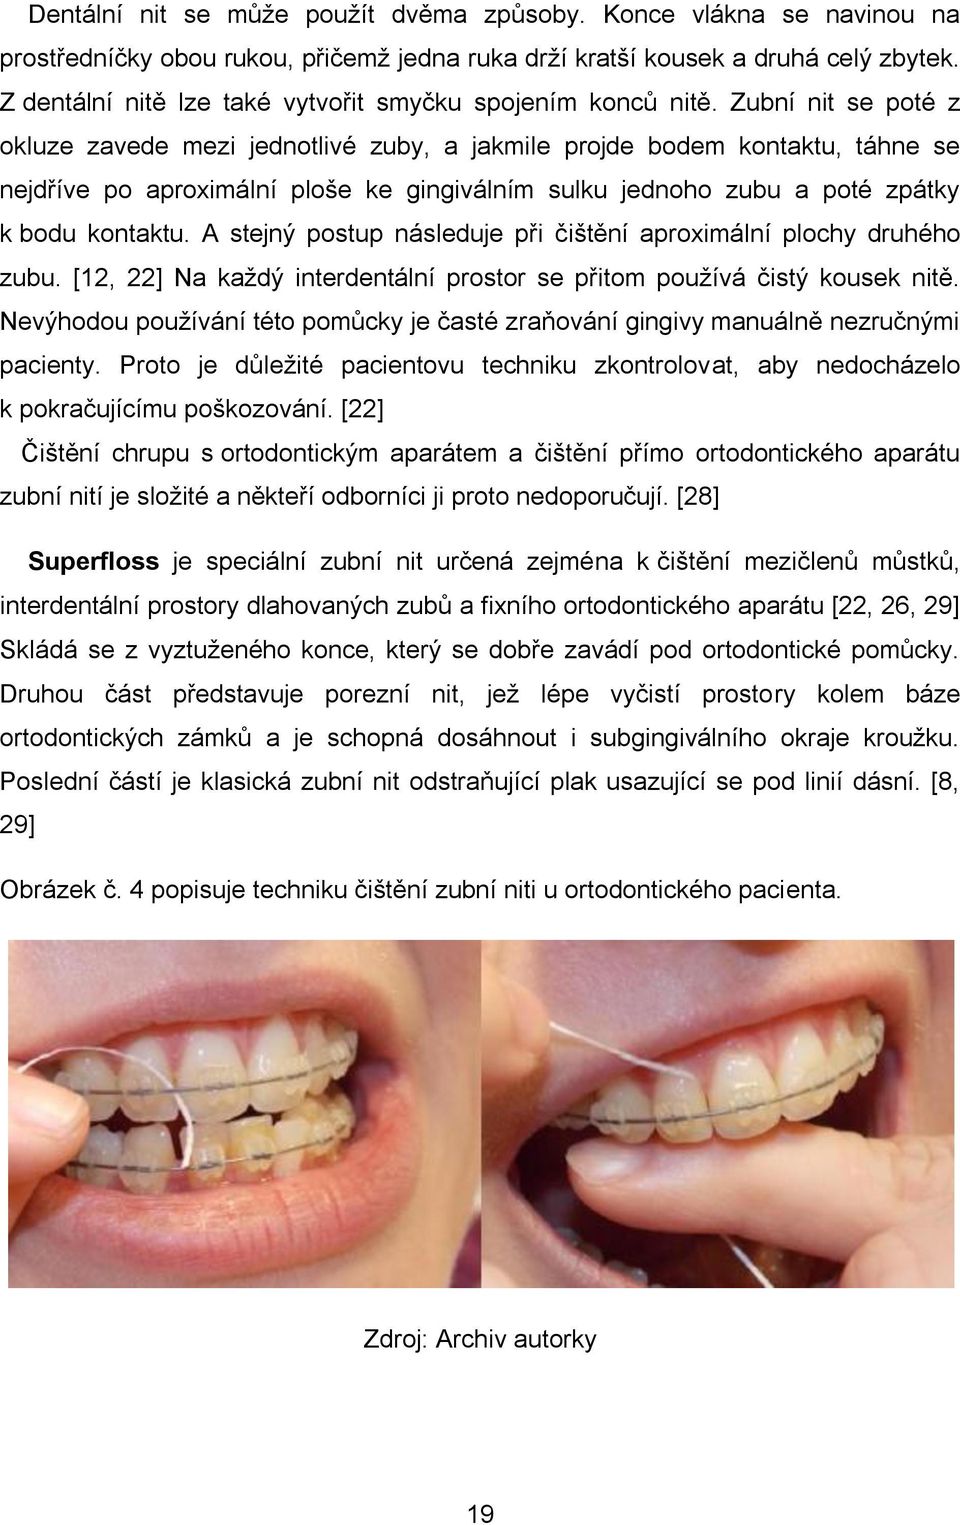 Zubní nit se poté z okluze zavede mezi jednotlivé zuby, a jakmile projde bodem kontaktu, táhne se nejdříve po aproximální ploše ke gingiválním sulku jednoho zubu a poté zpátky k bodu kontaktu.